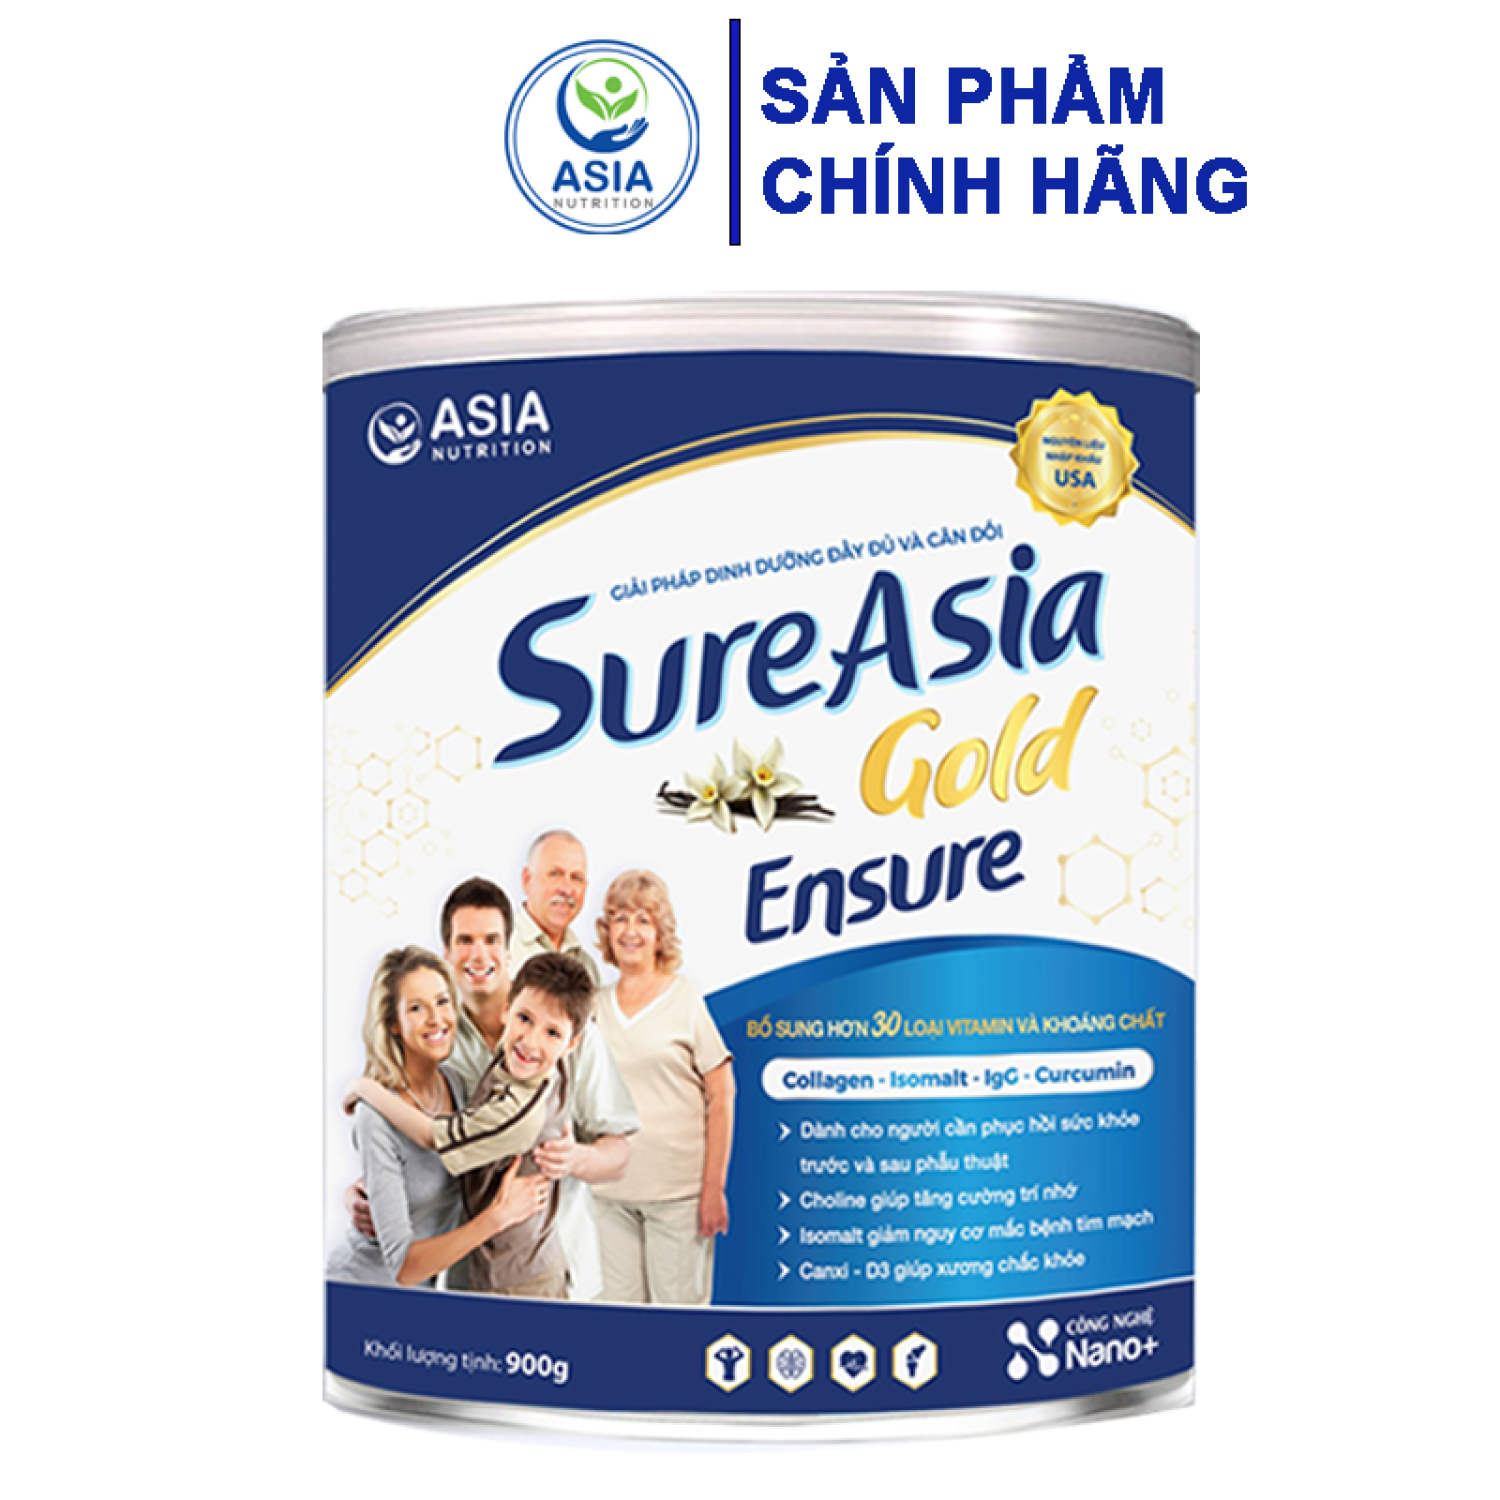 Sữa bột sure asia gold ensure 900g cao cấp nguyên liệu nhập khẩu từ hoa kỳ - ảnh sản phẩm 1